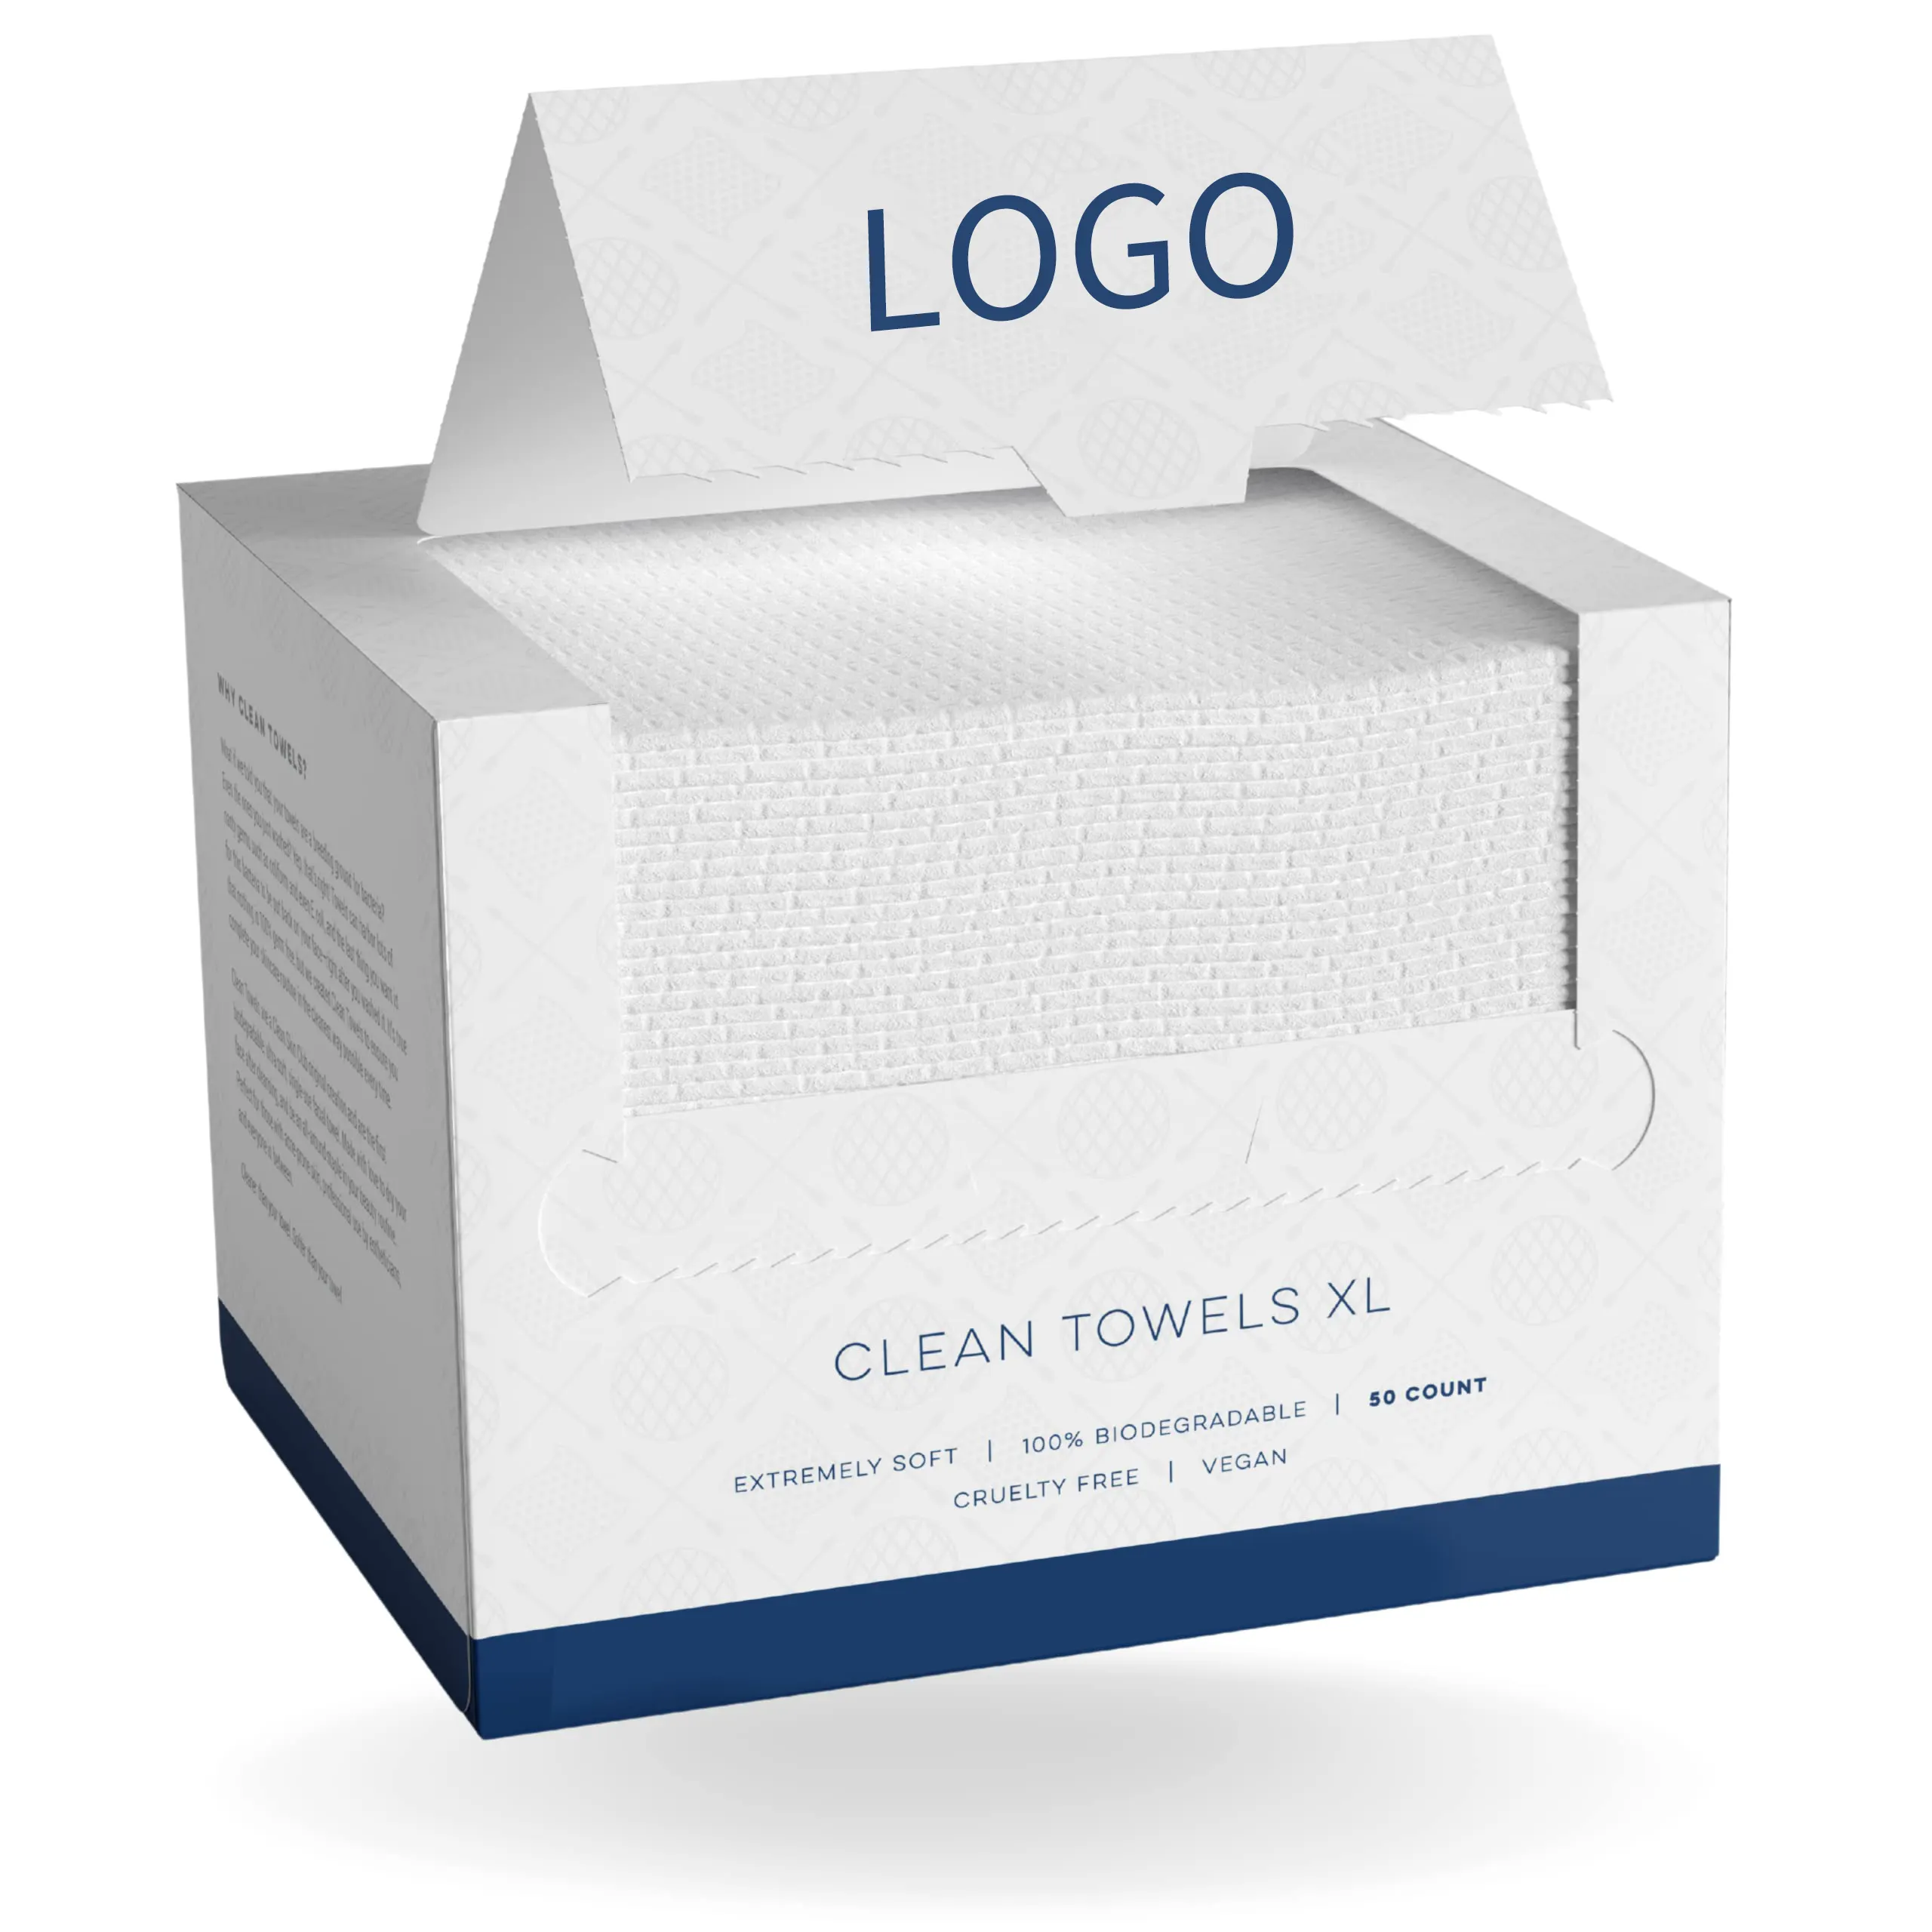 Toalhas limpas Eco-friendly biodegradáveis confortáveis macias do clube da pele limpa Toalhas faciais descartáveis Xl